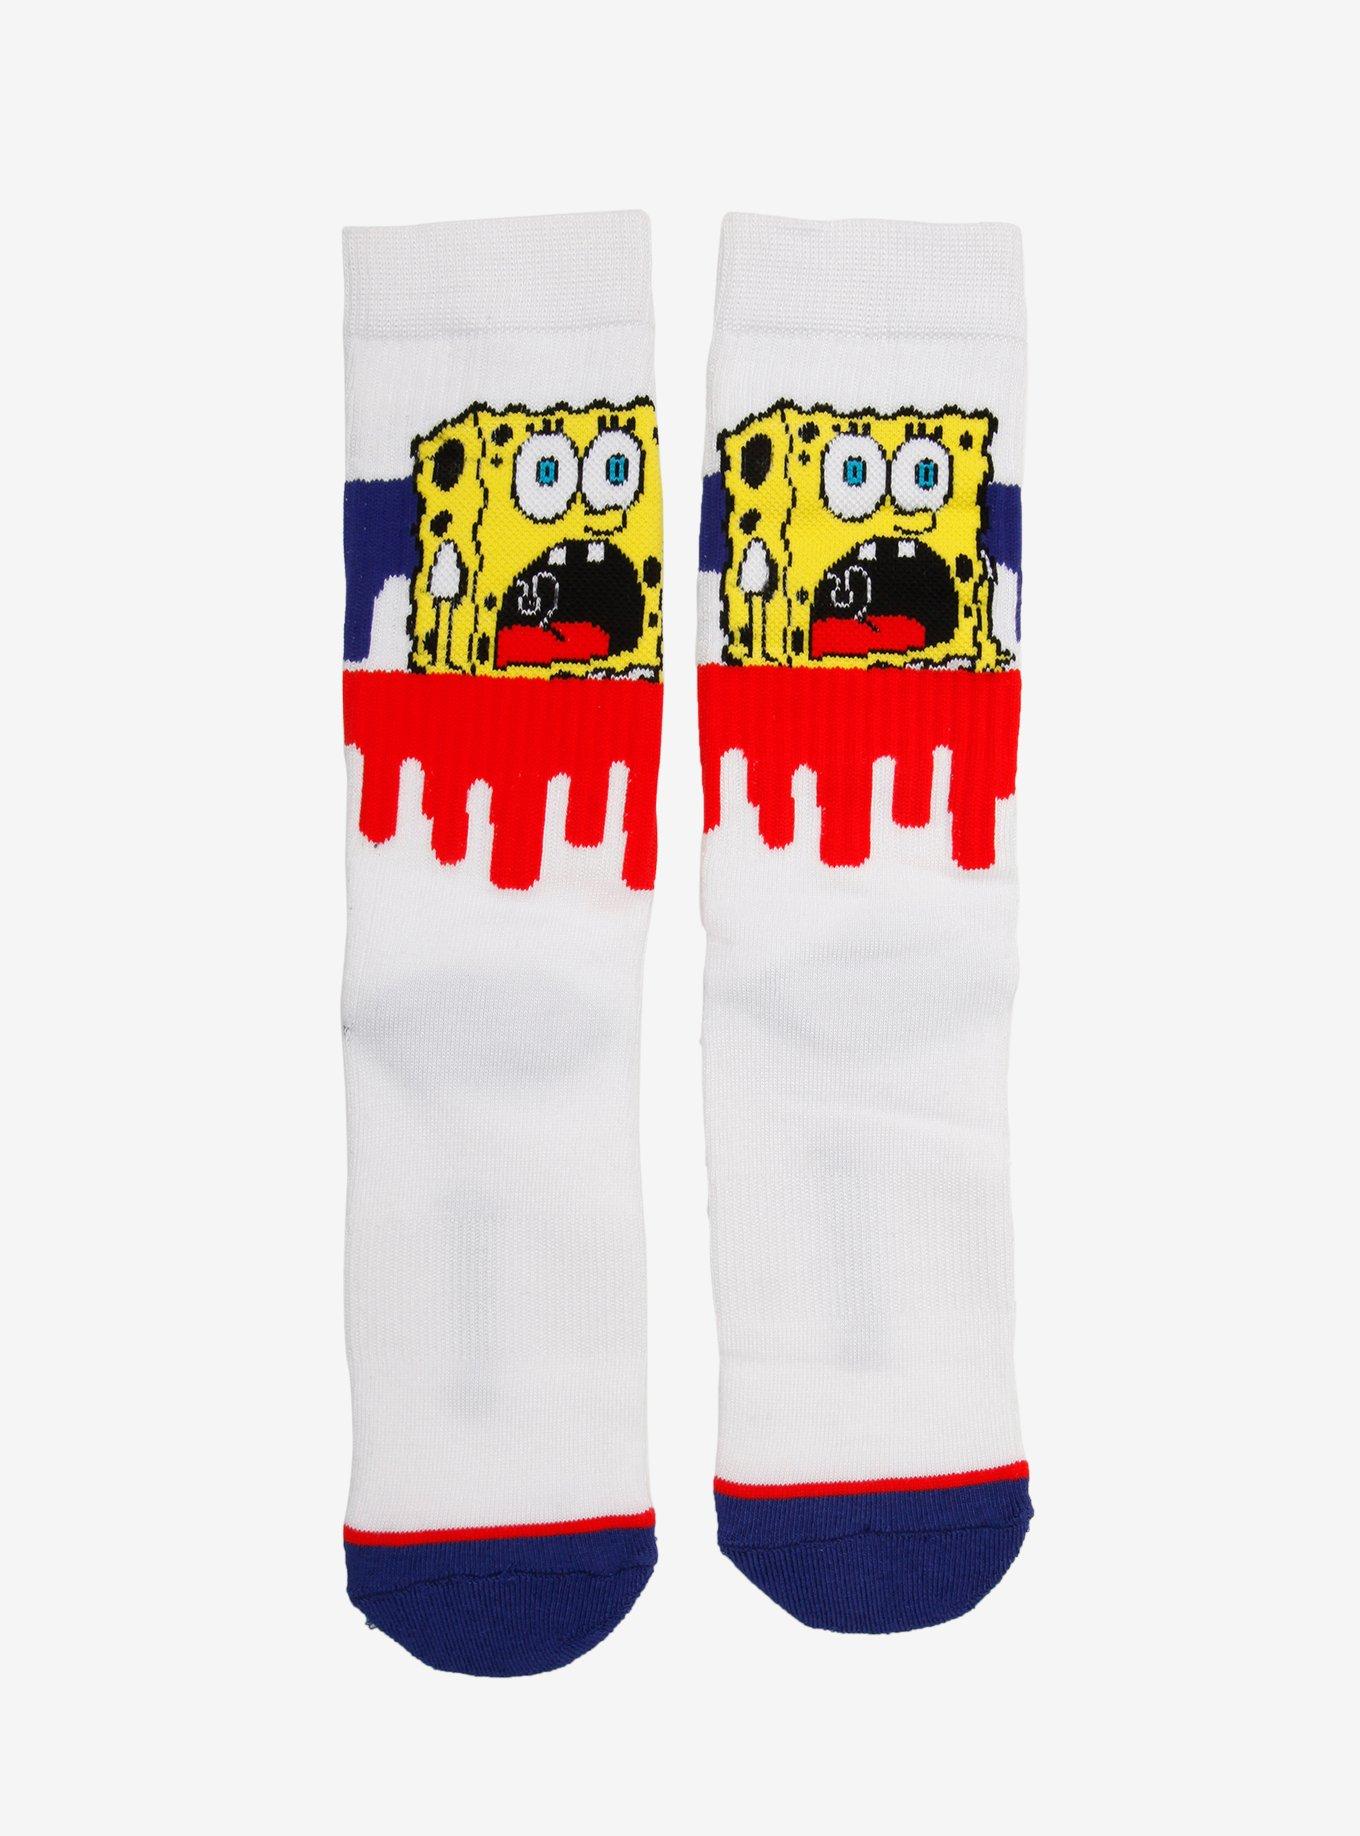 SpongeBob SquarePants Scream Drip Crew Socks, , hi-res